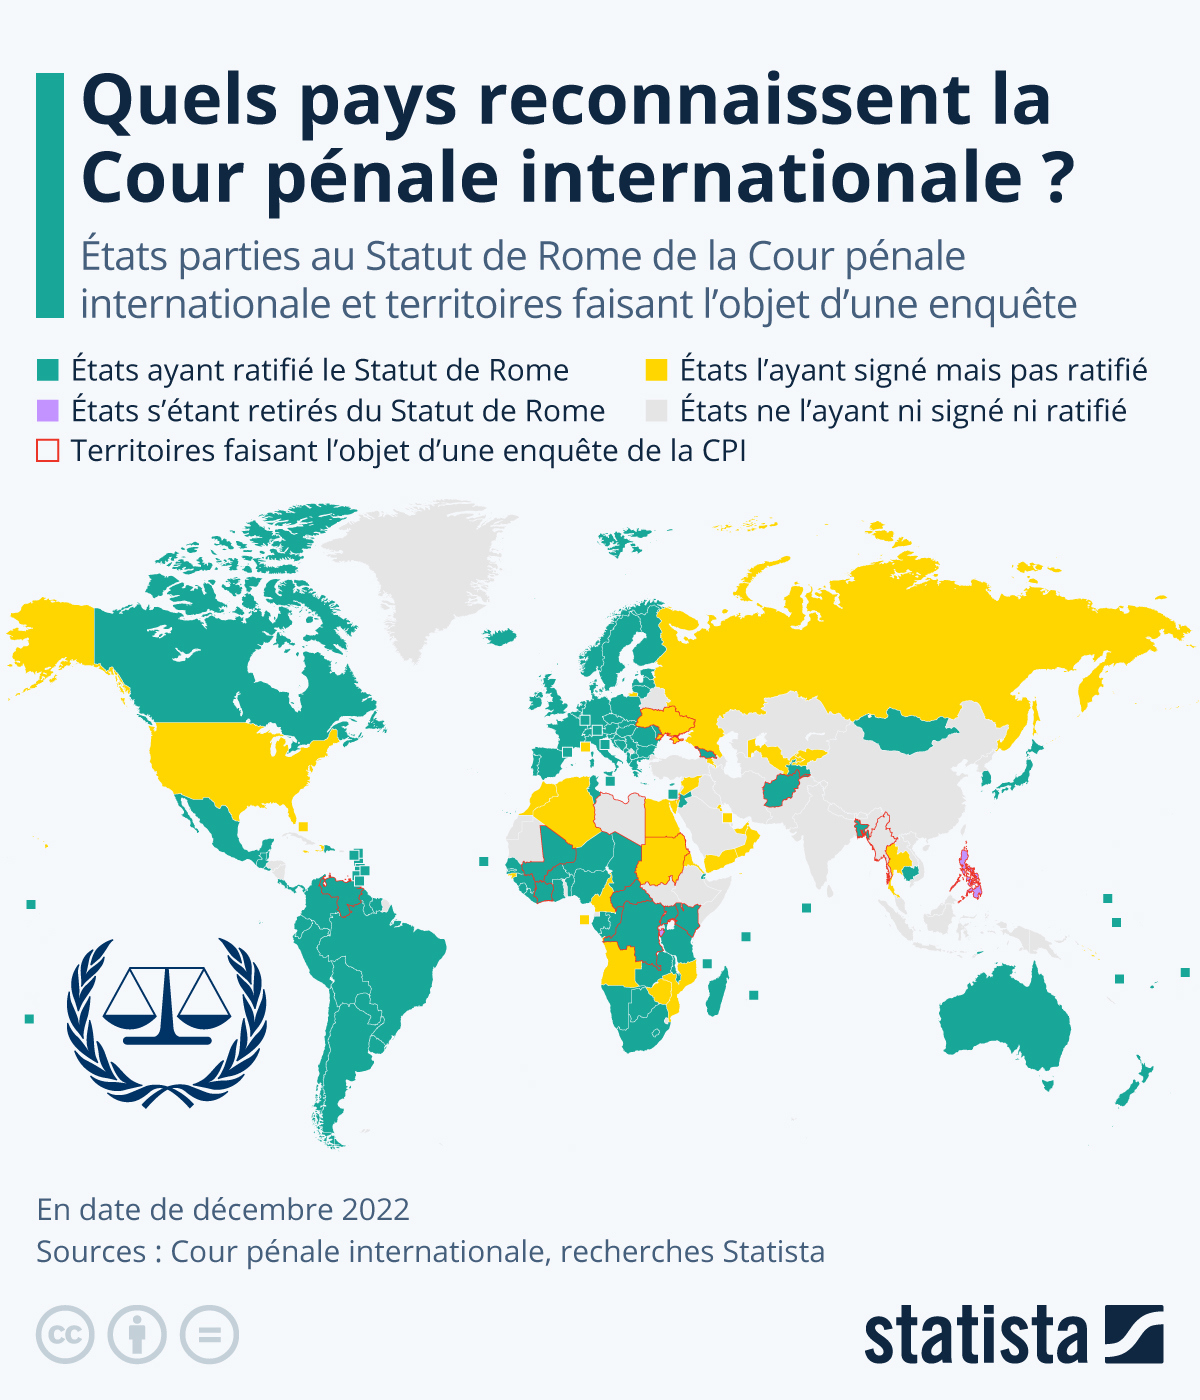 Quels pays reconnaissent la Cour pénale internationale